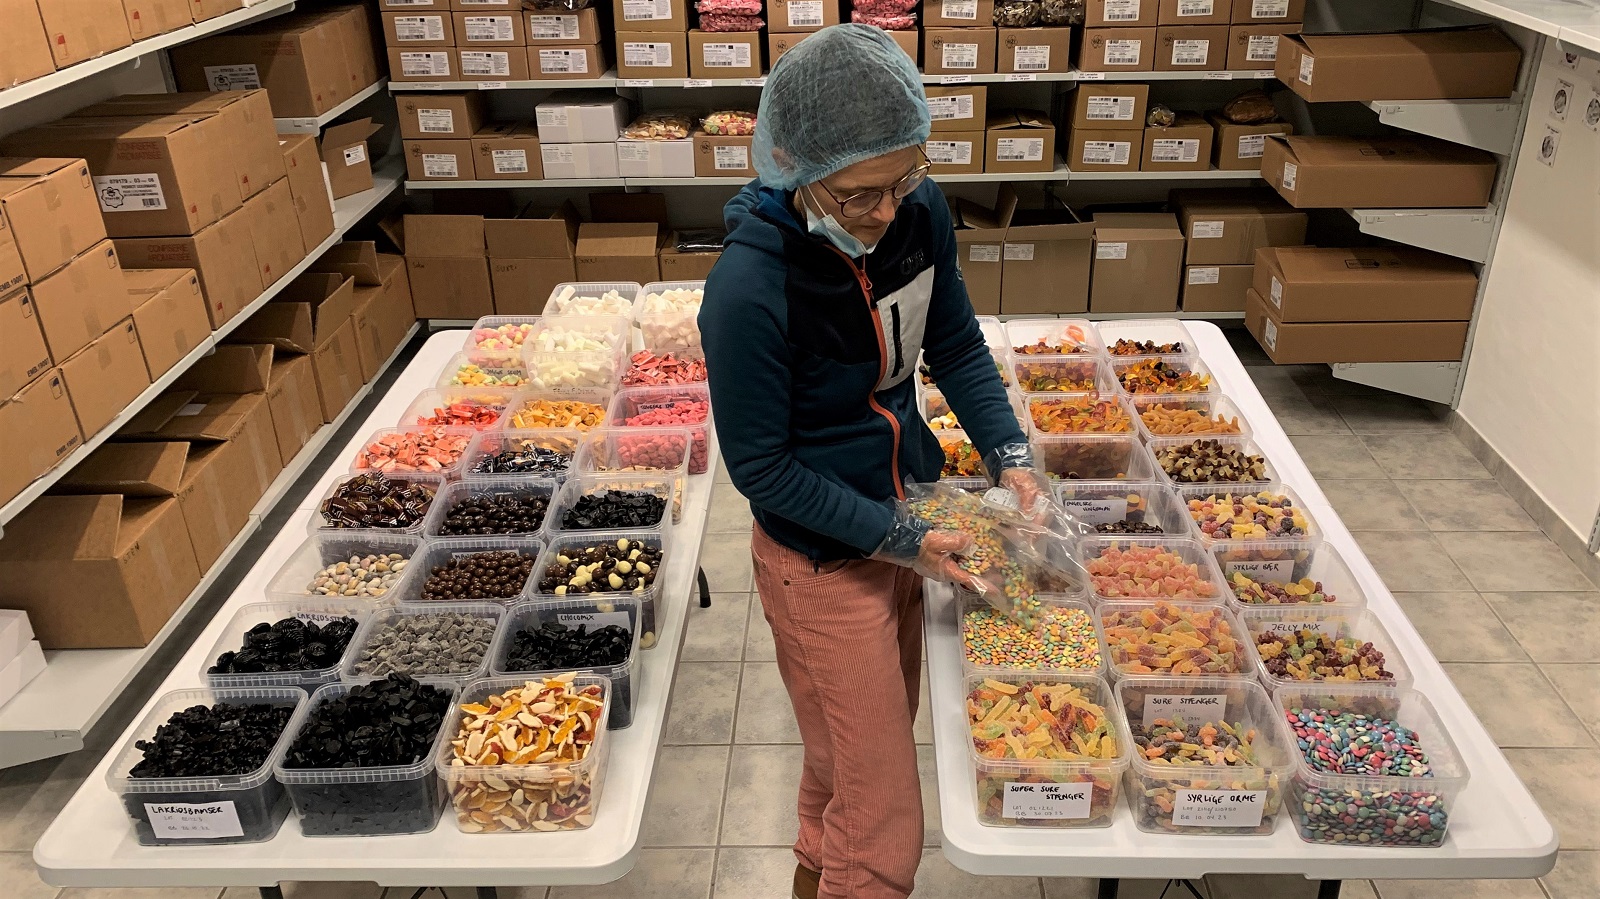 Sweetsorganic vil sælge økologisk bland-selv slik til hele landet | Økologisk - om udviklingen